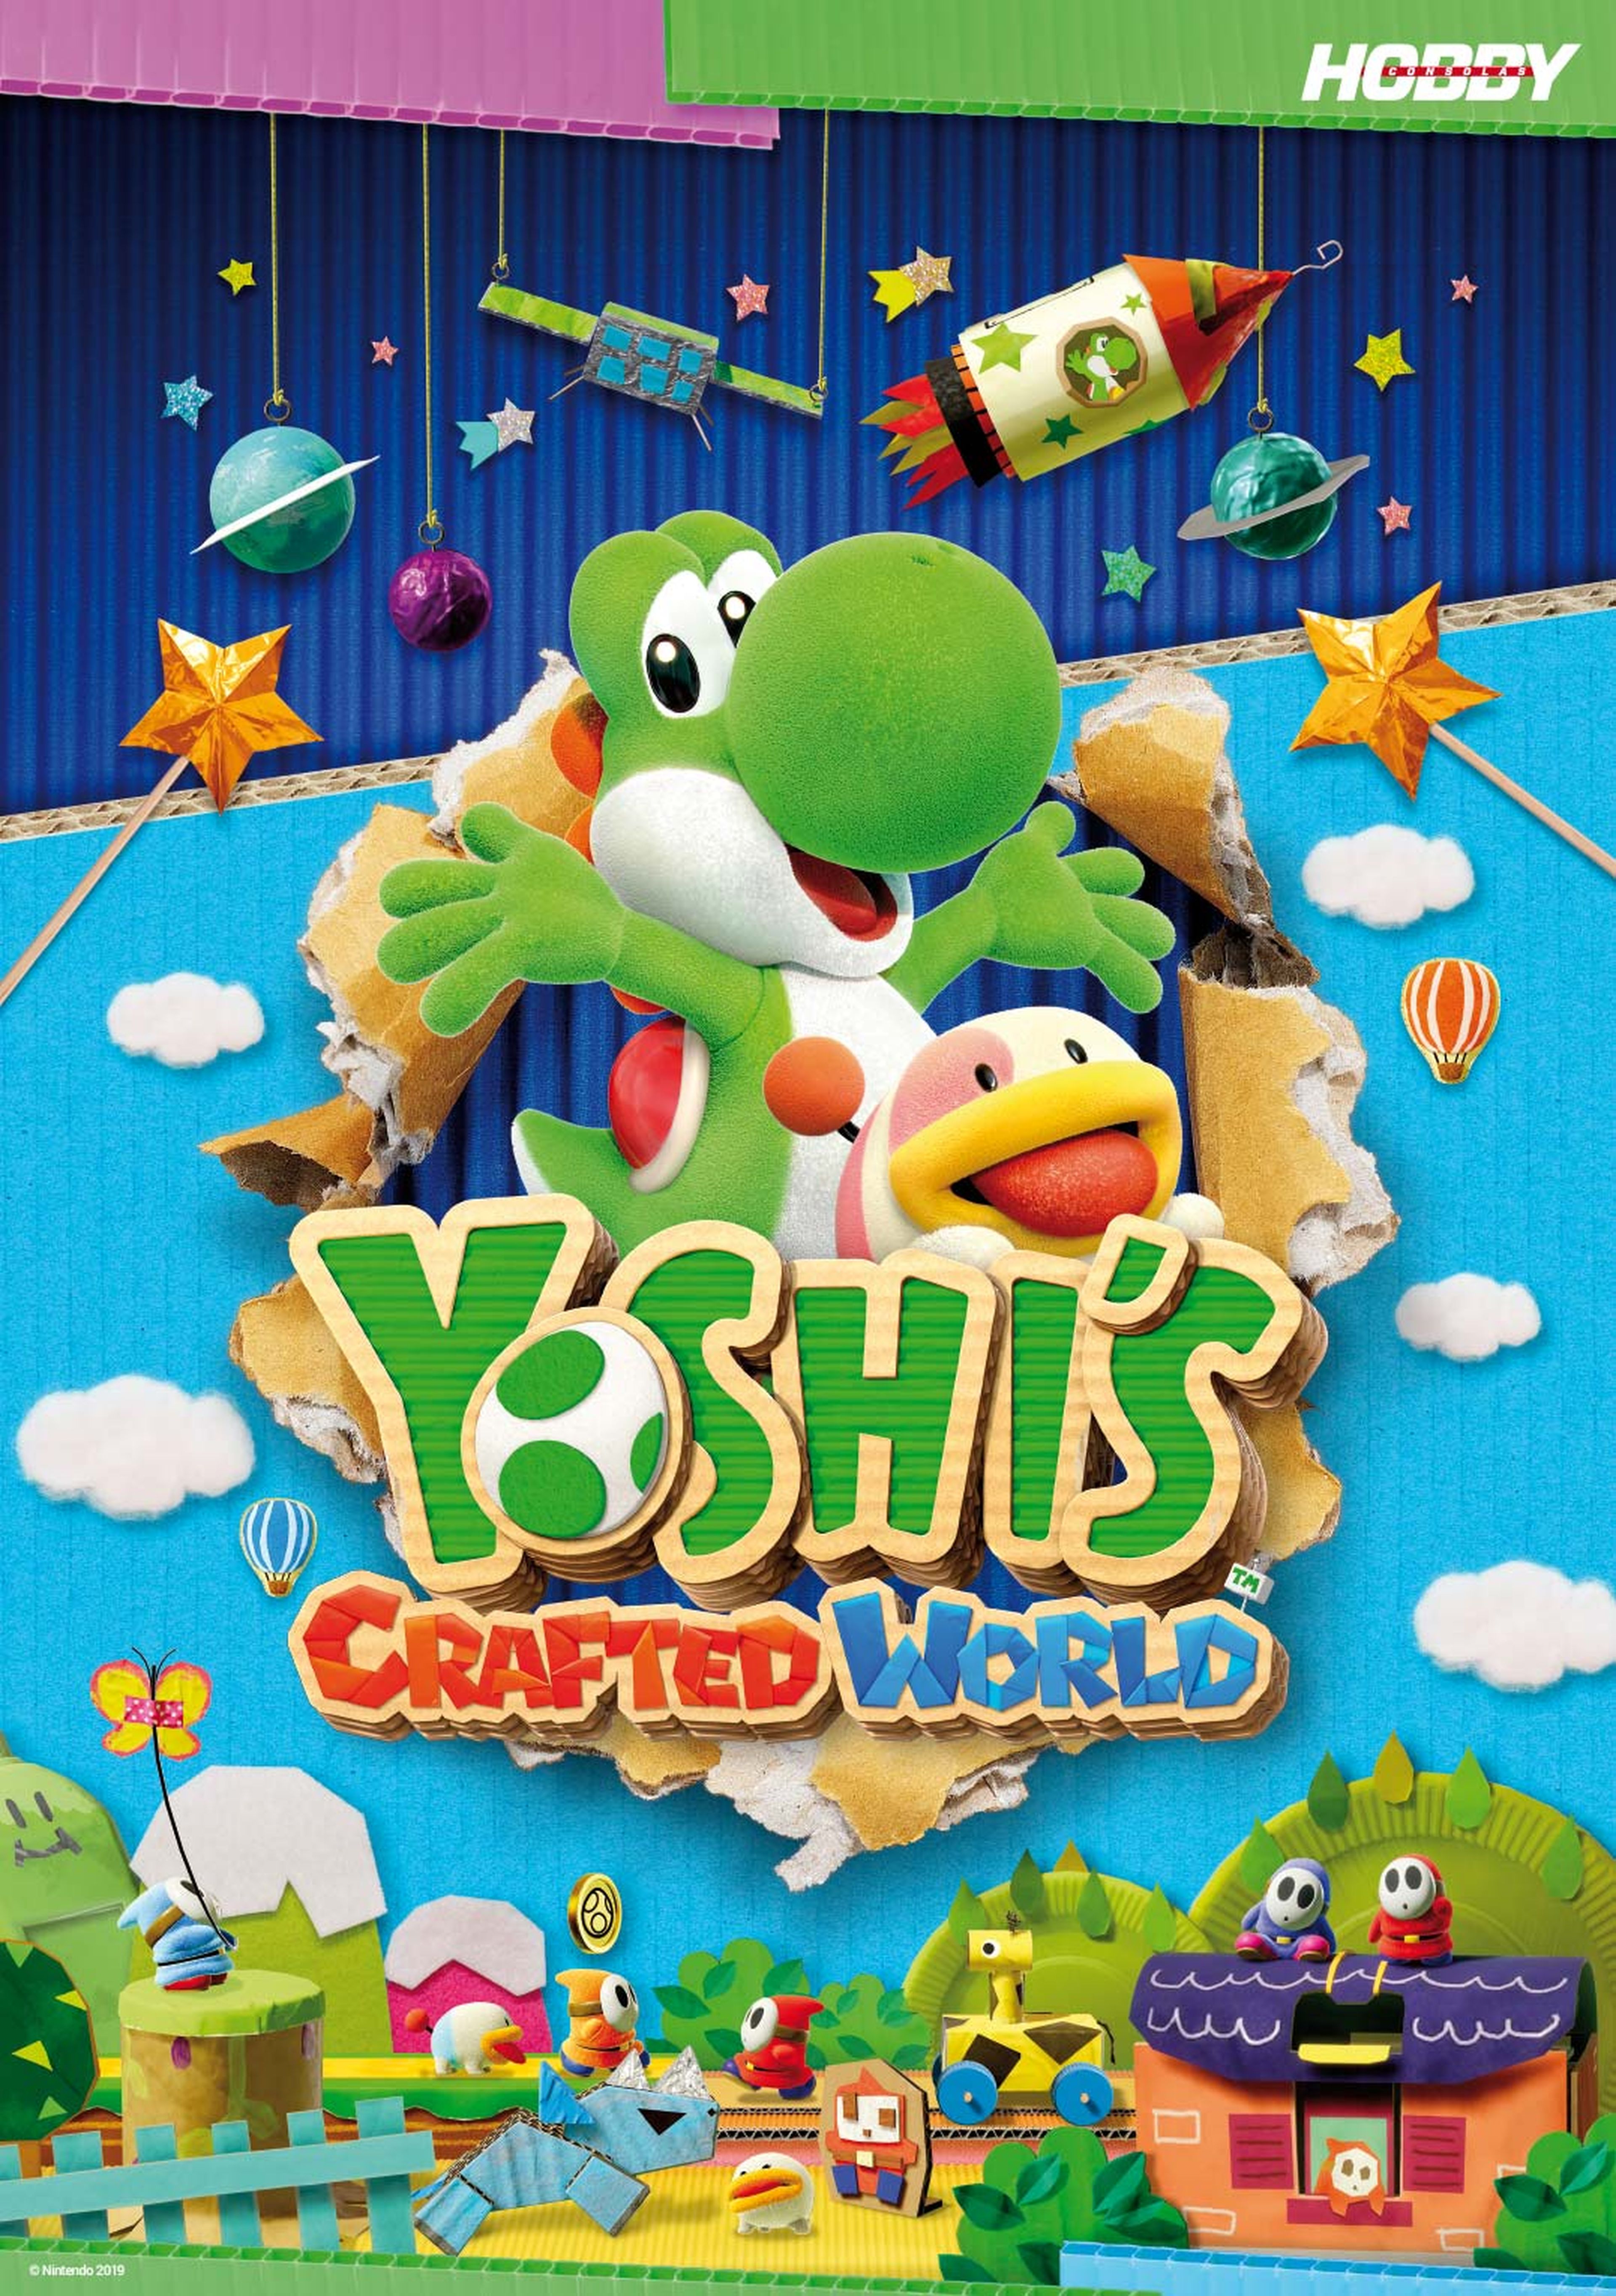 Hobby Consolas 333, a la venta con pósters de Days Gone y Yoshi